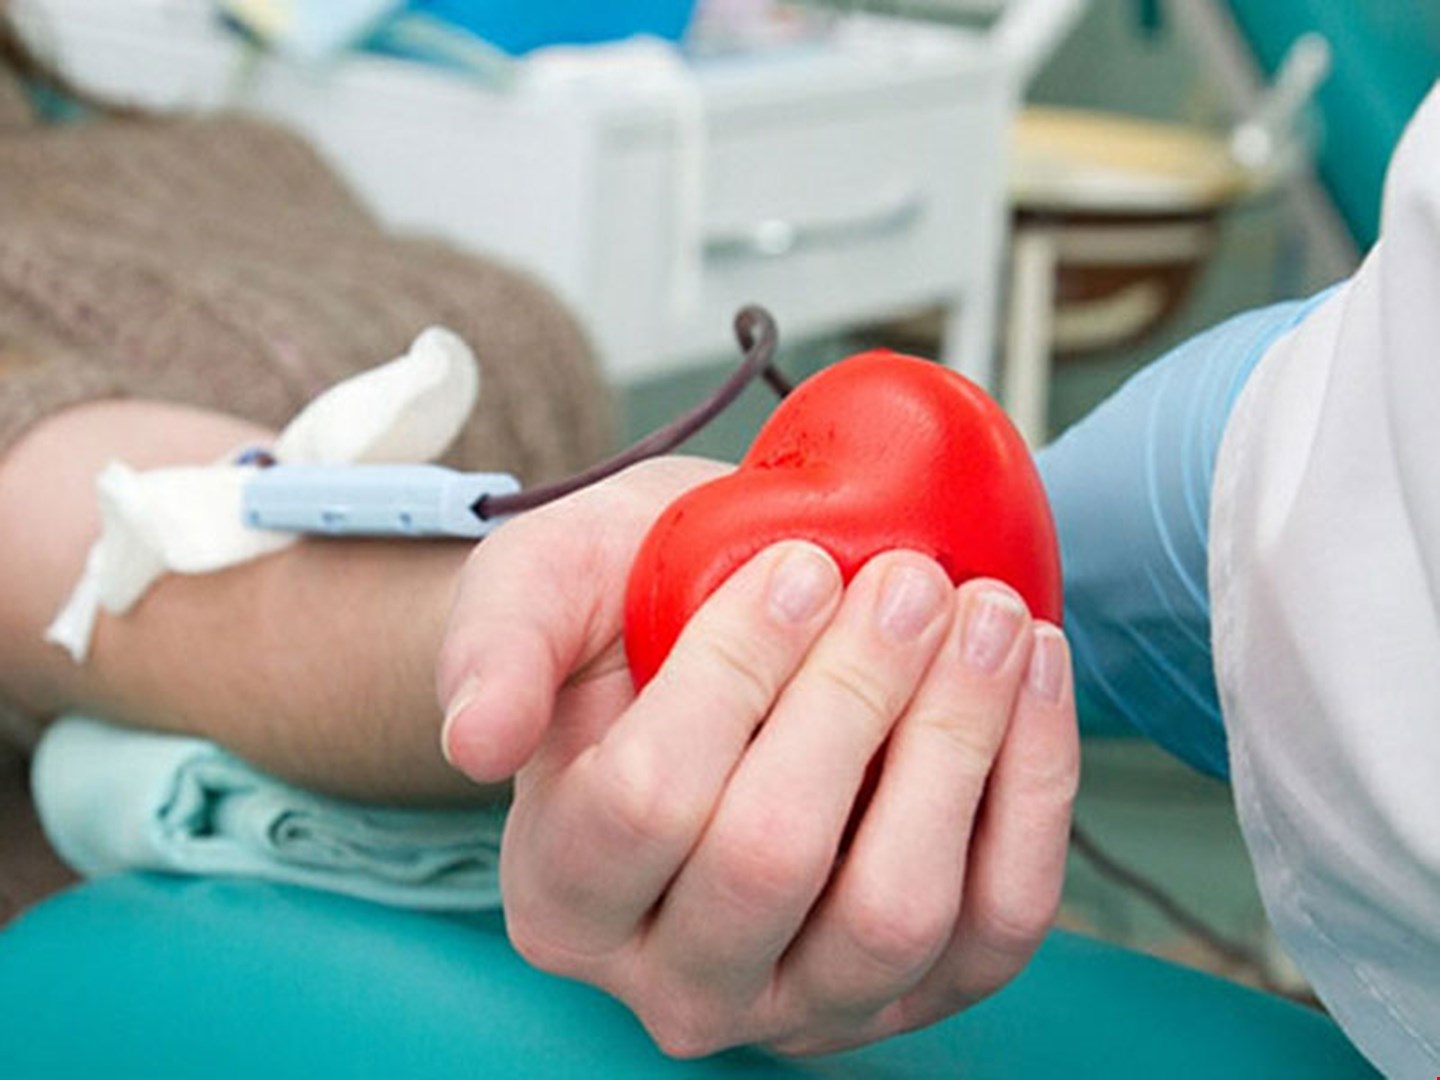 Новость - События - Помоги спасти: в госпитале просят срочно сдать кровь